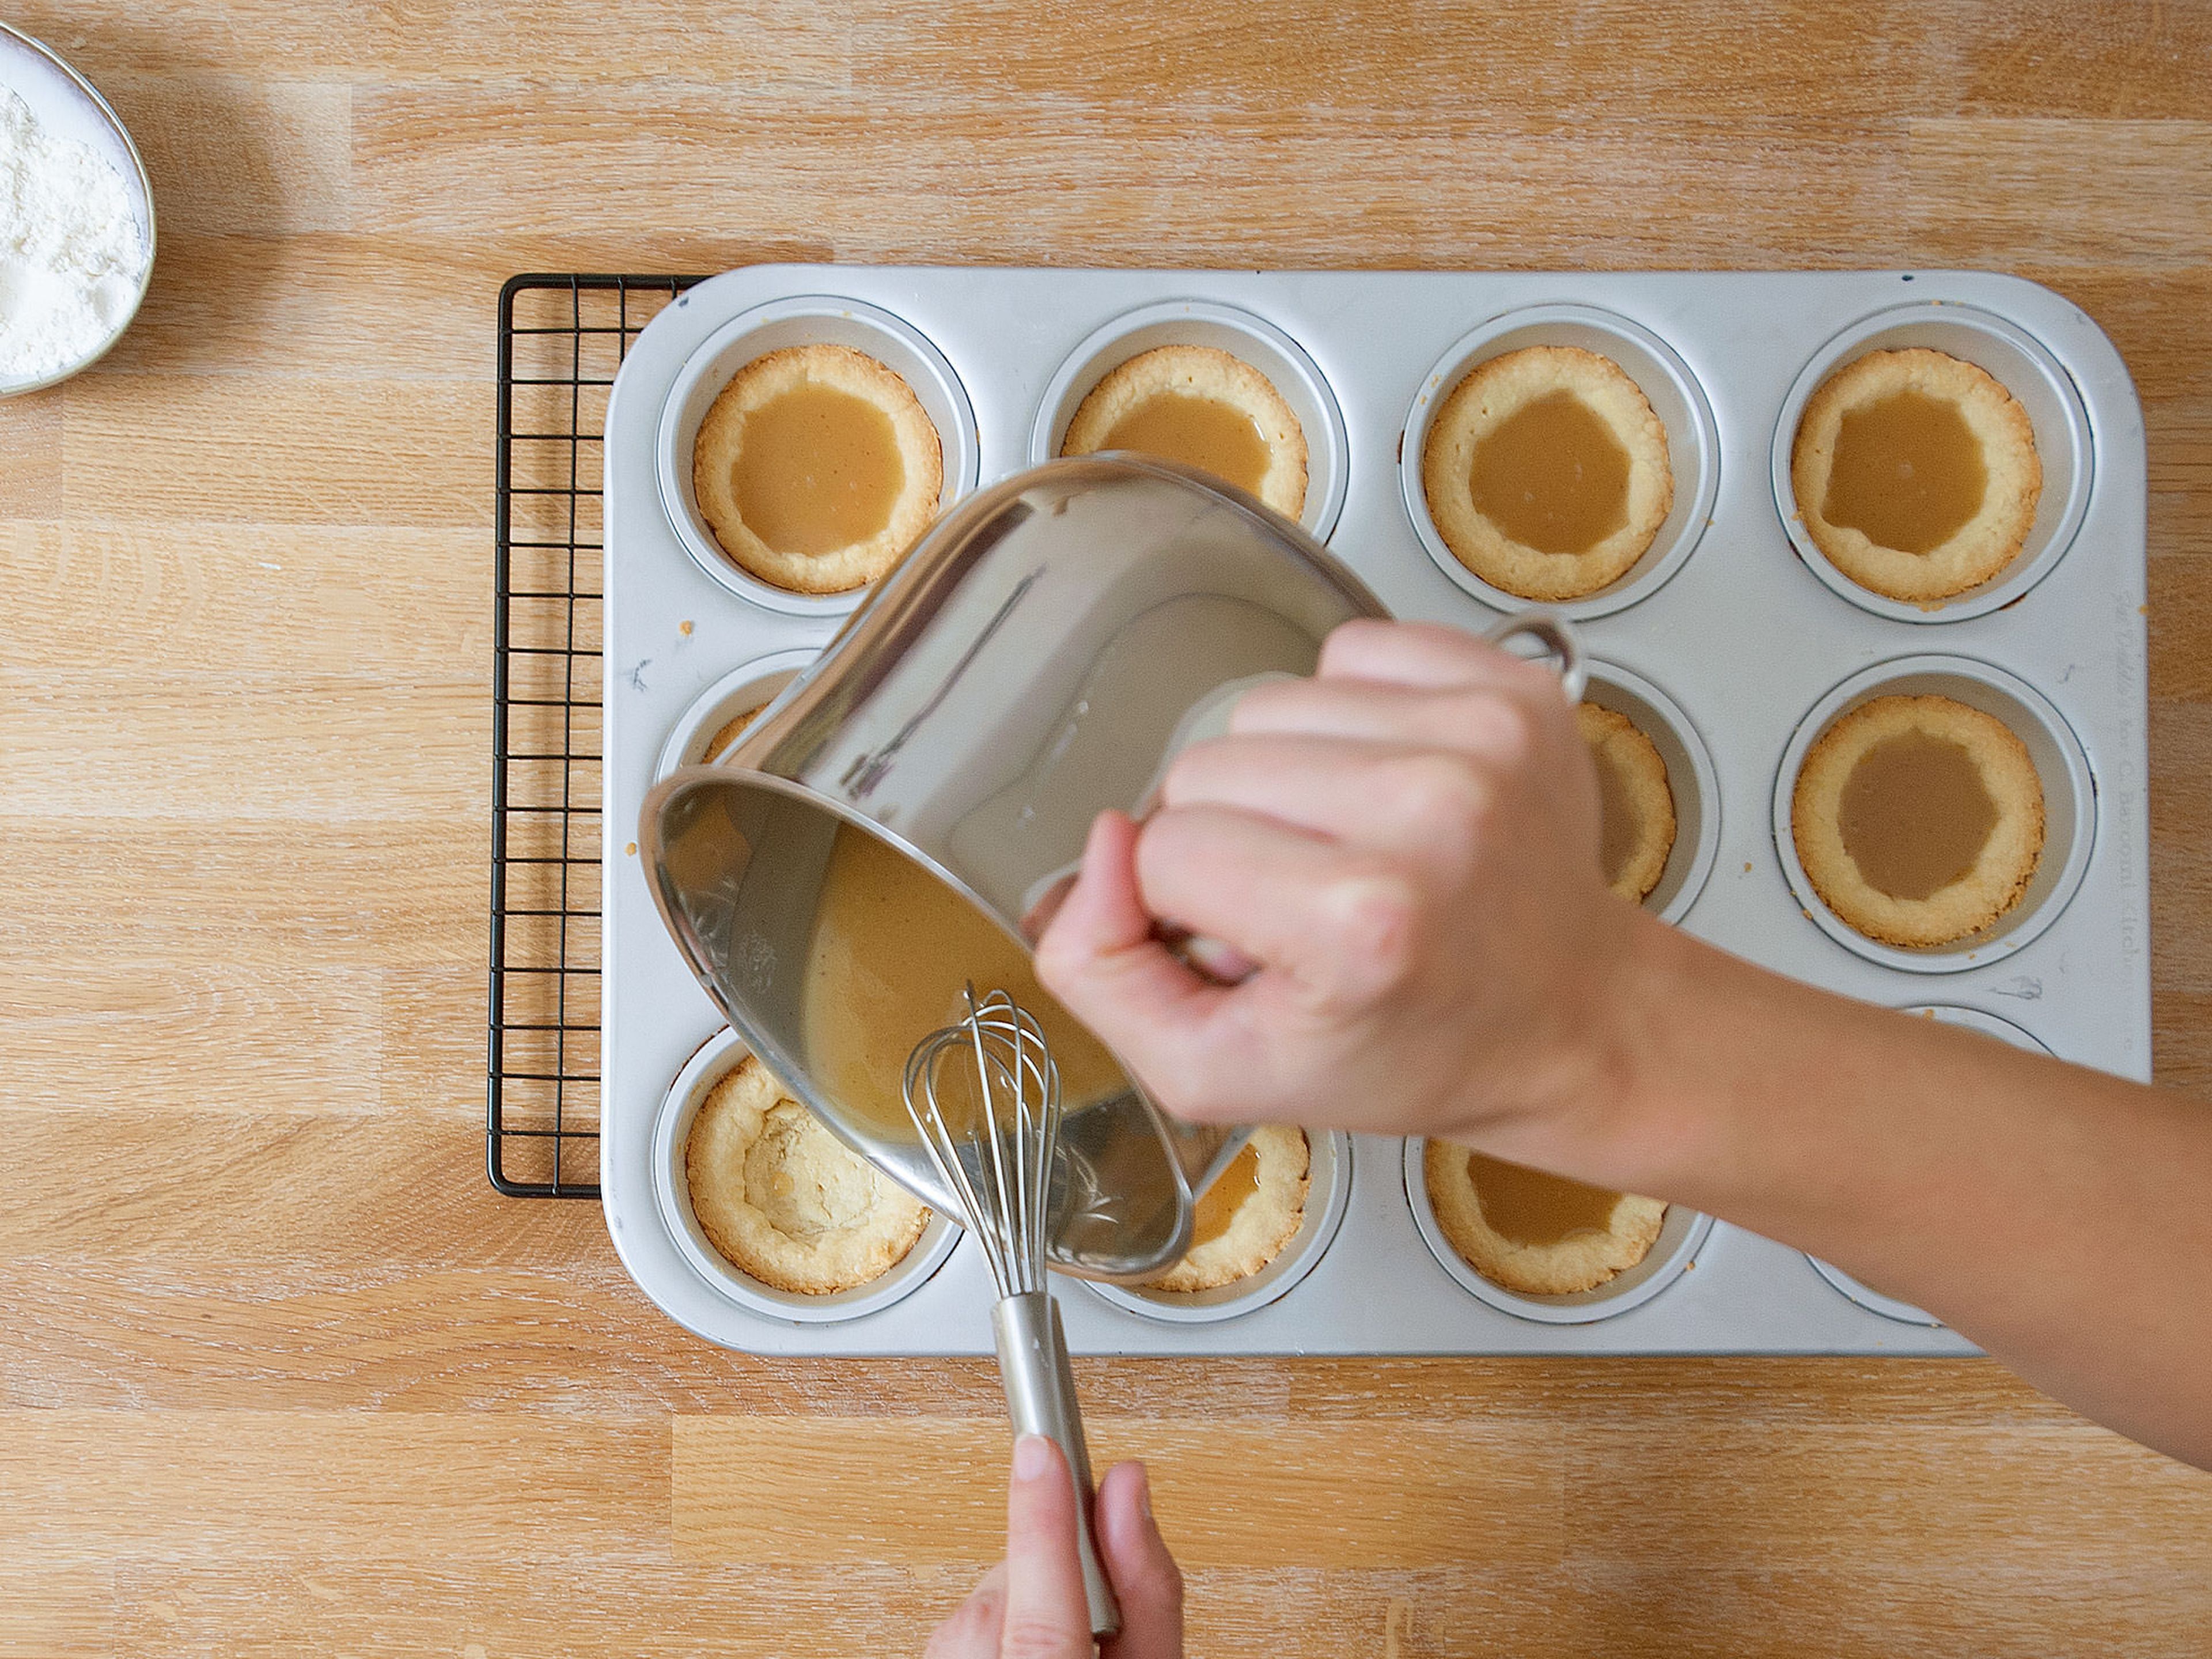 Karamell in die abgekühlten Cups füllen und ca. 6 - 8 Min. bei 180°C weiter backen. Anschließend komplett auskühlen lassen.